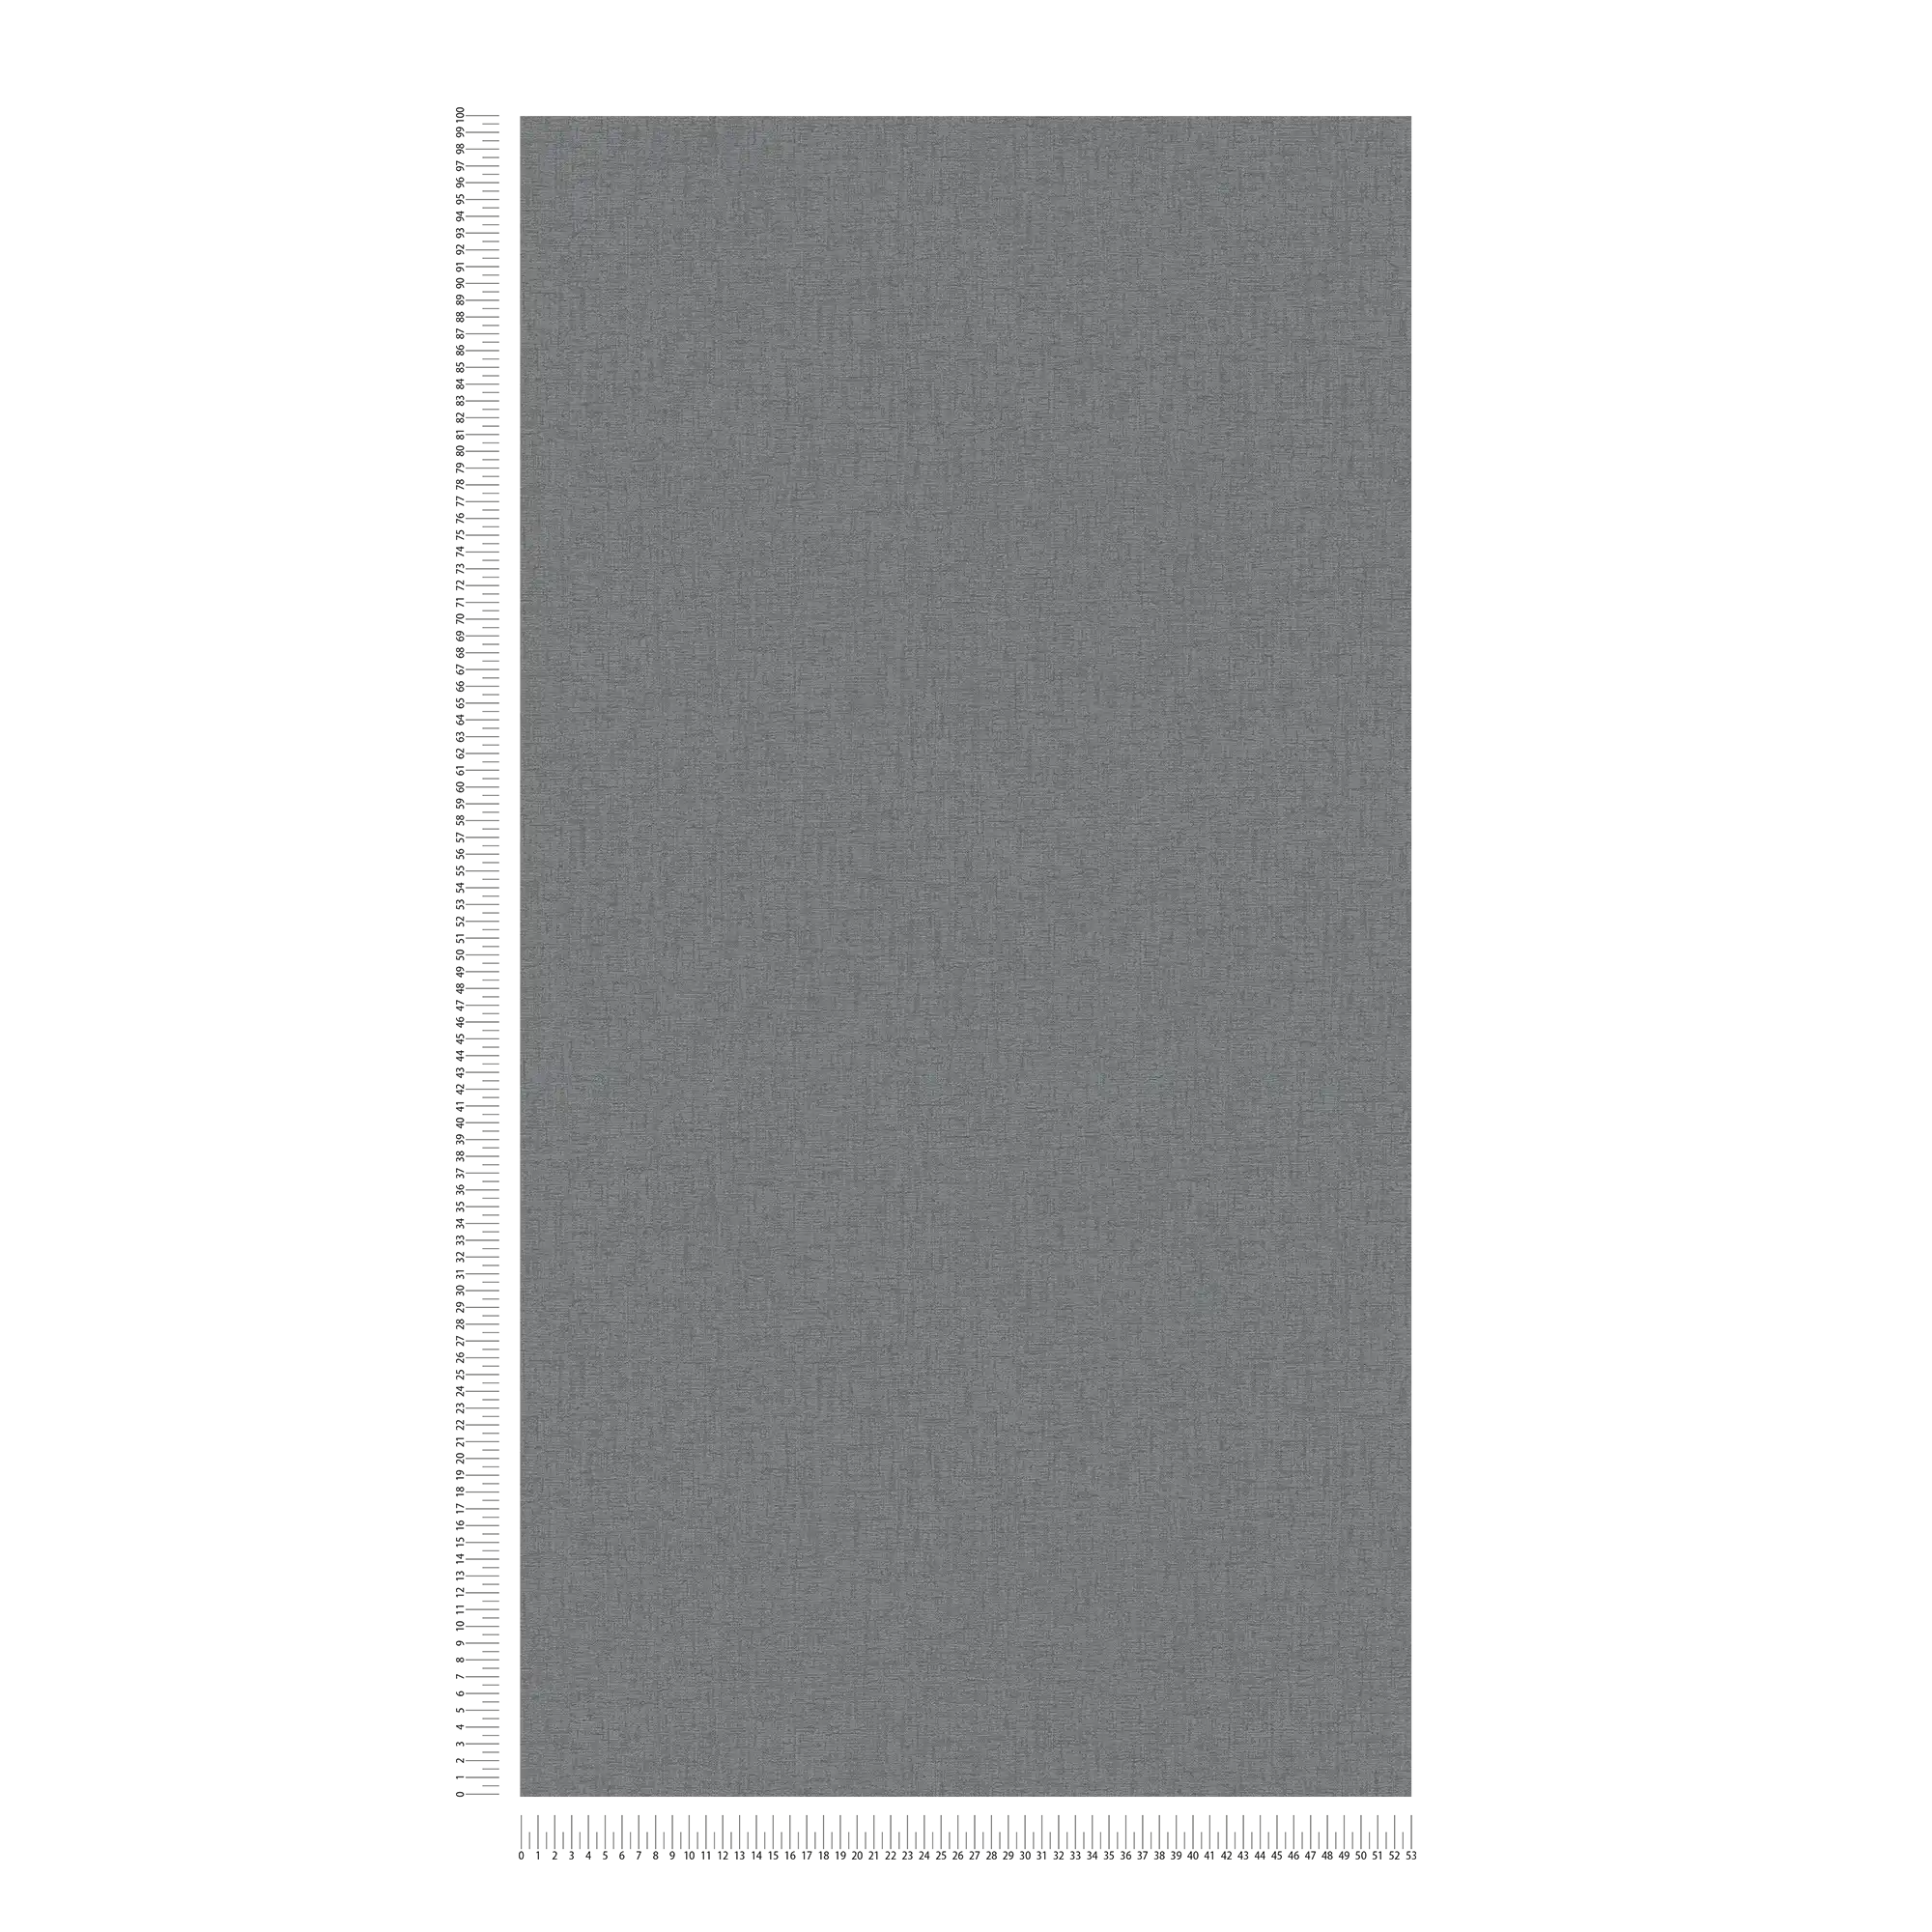             Einfarbige Vliestapete mit Textilstruktur – Anthrazit, Grau
        